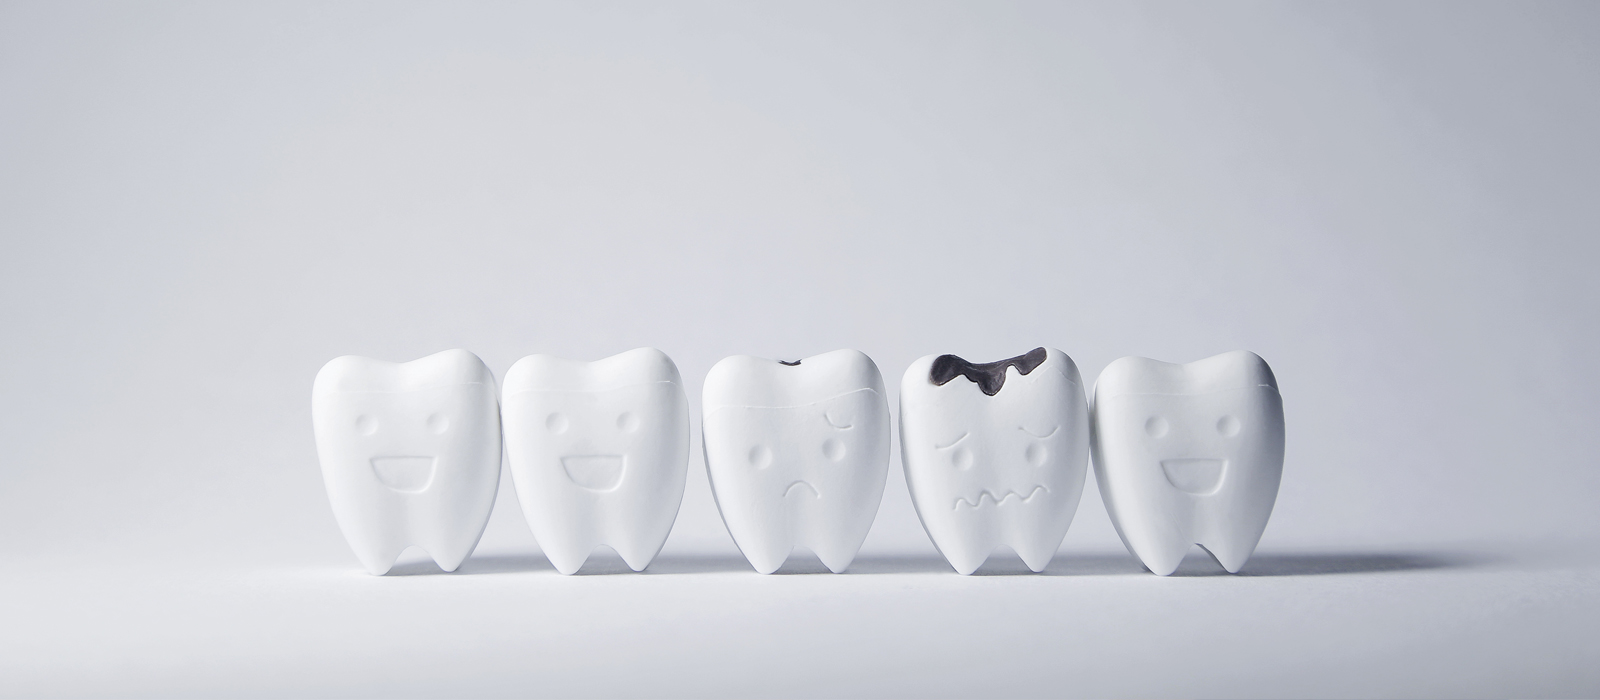 虫歯リスクと唾液の関係性について